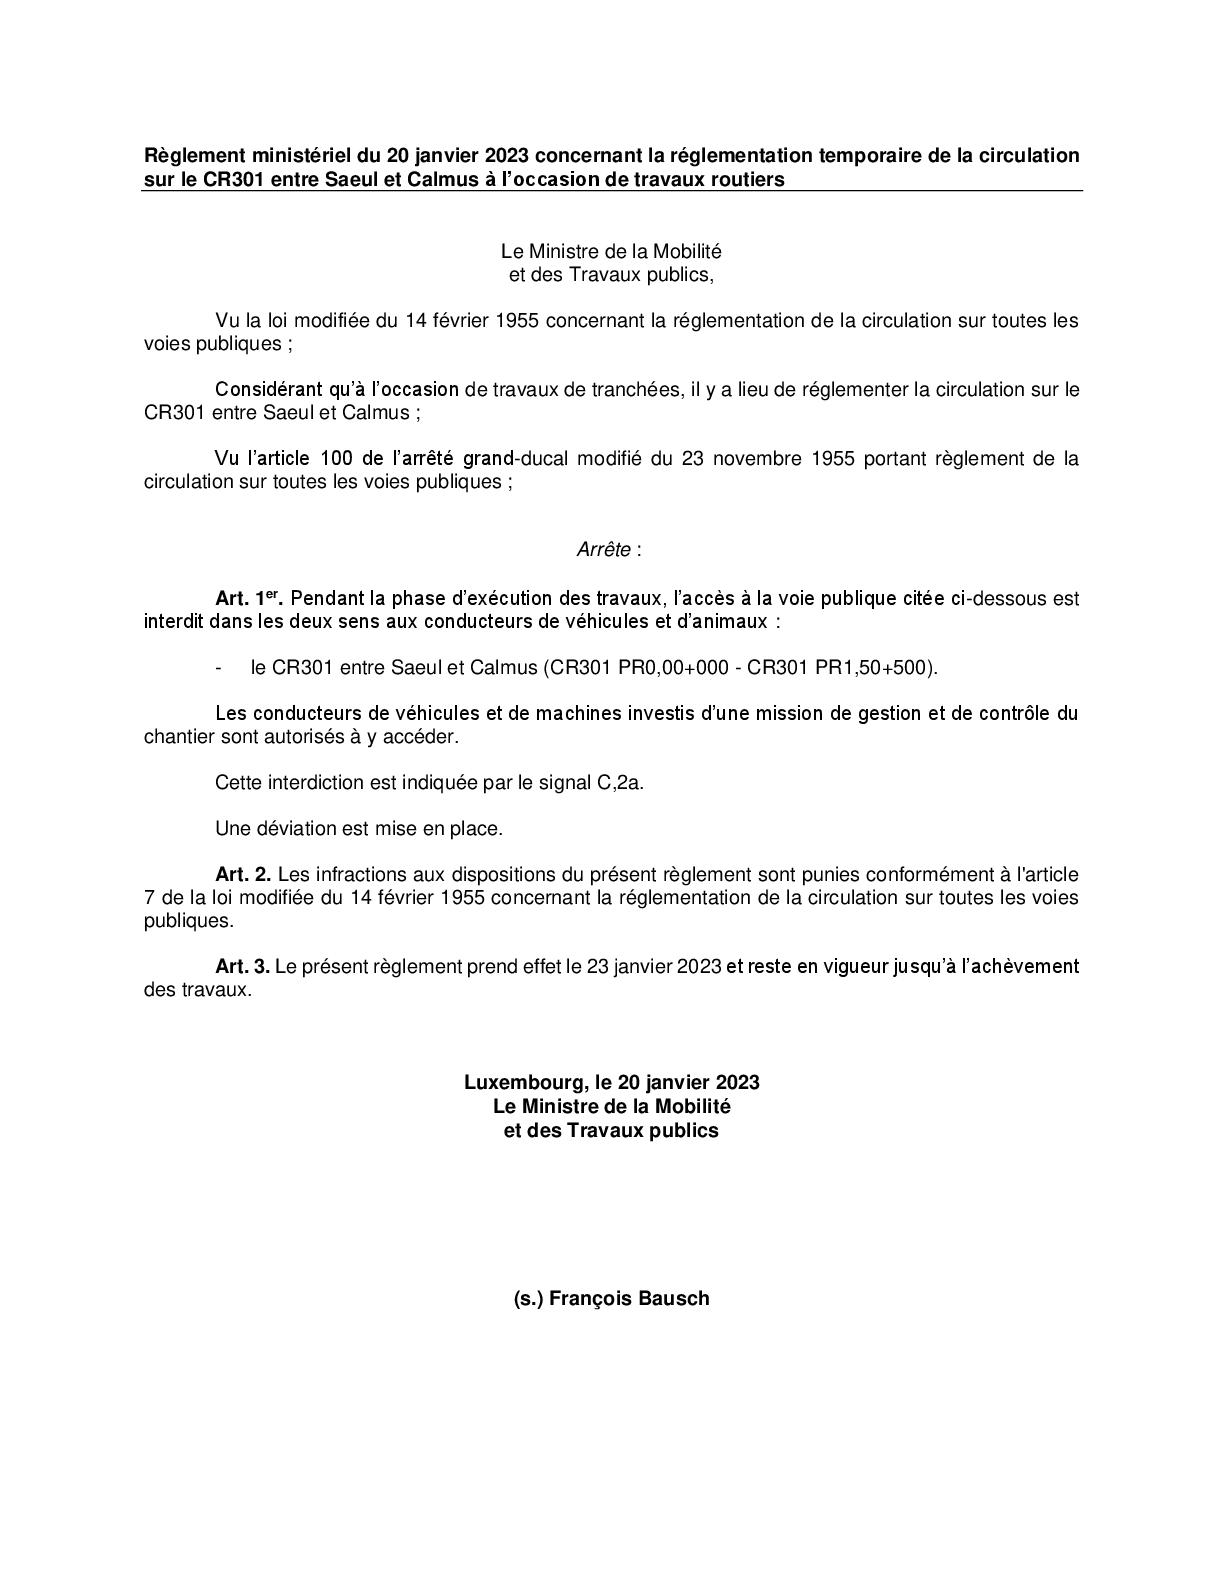 Règlement ministériel du 20 janvier 2023 concernant la réglementation temporaire de la circulation sur le CR301 entre Calmus et Saeul à l’occasion de travaux routiers